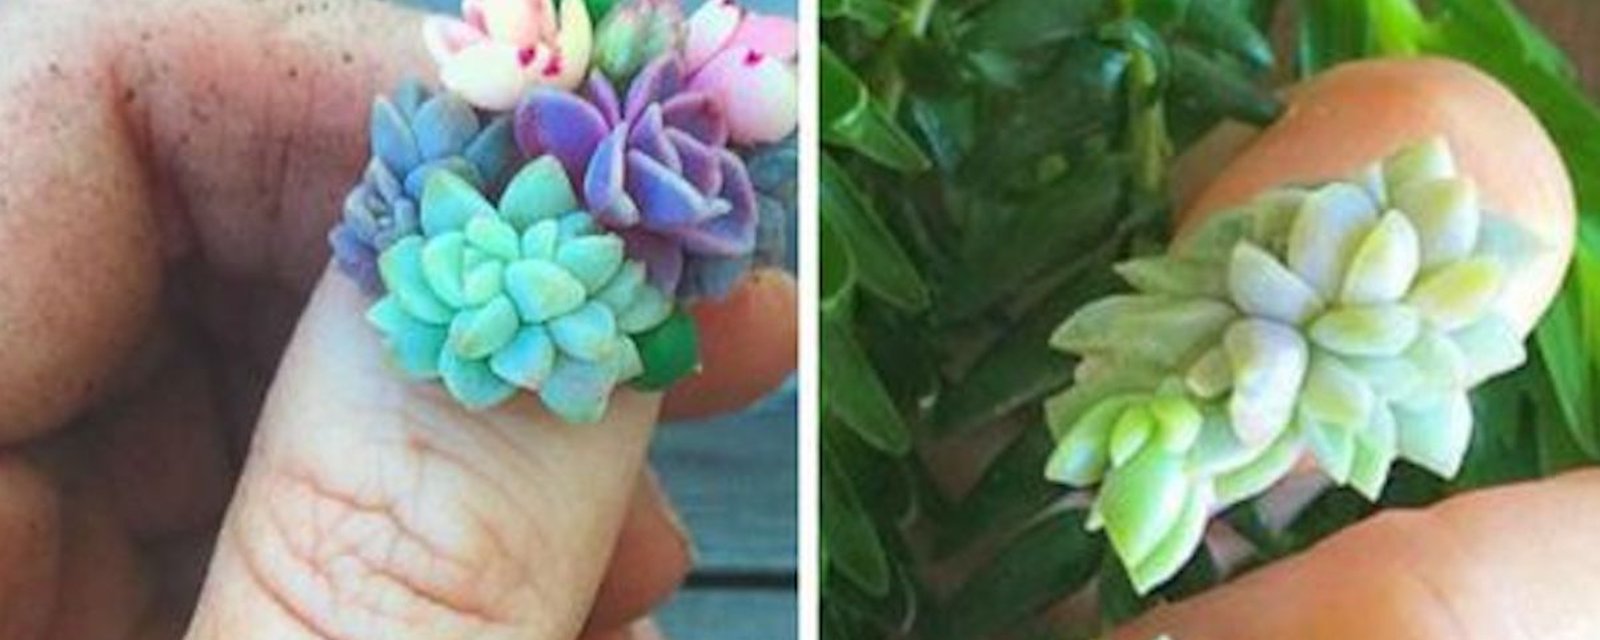 Nouveauté en matière de manucures: des plantes succulentes qui poussent sur les ongles!